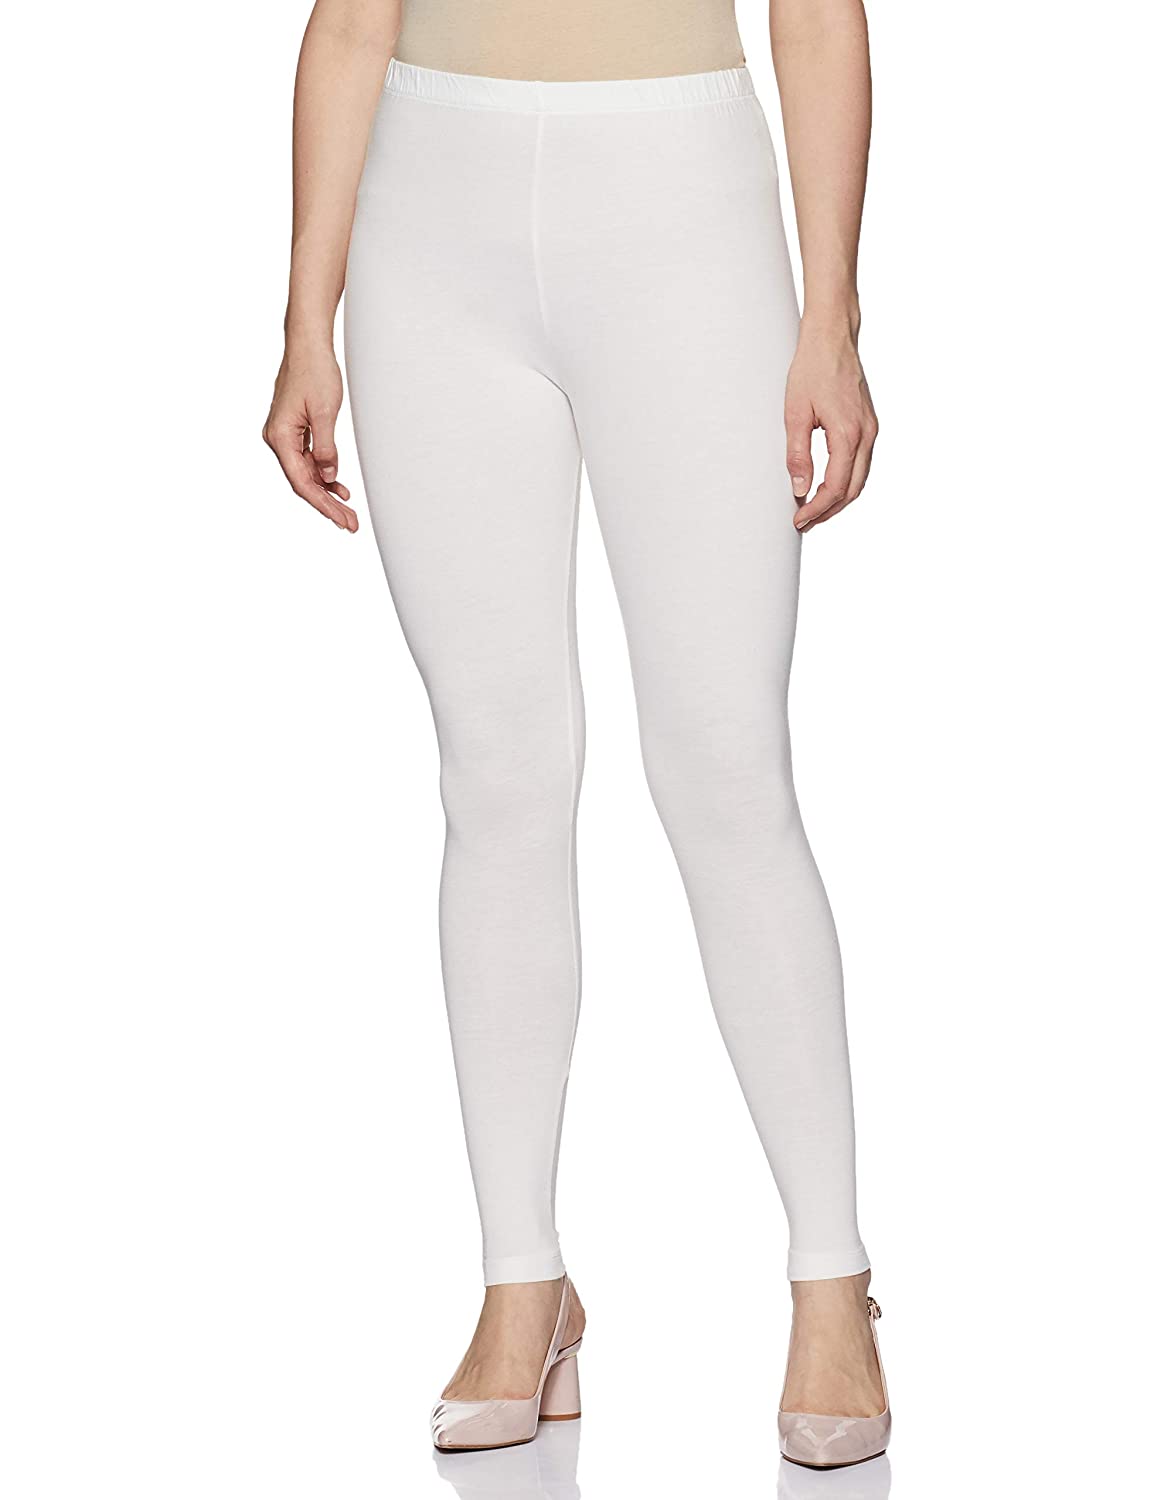 White Rupa Cotton leggings pants for Woman - Stilento